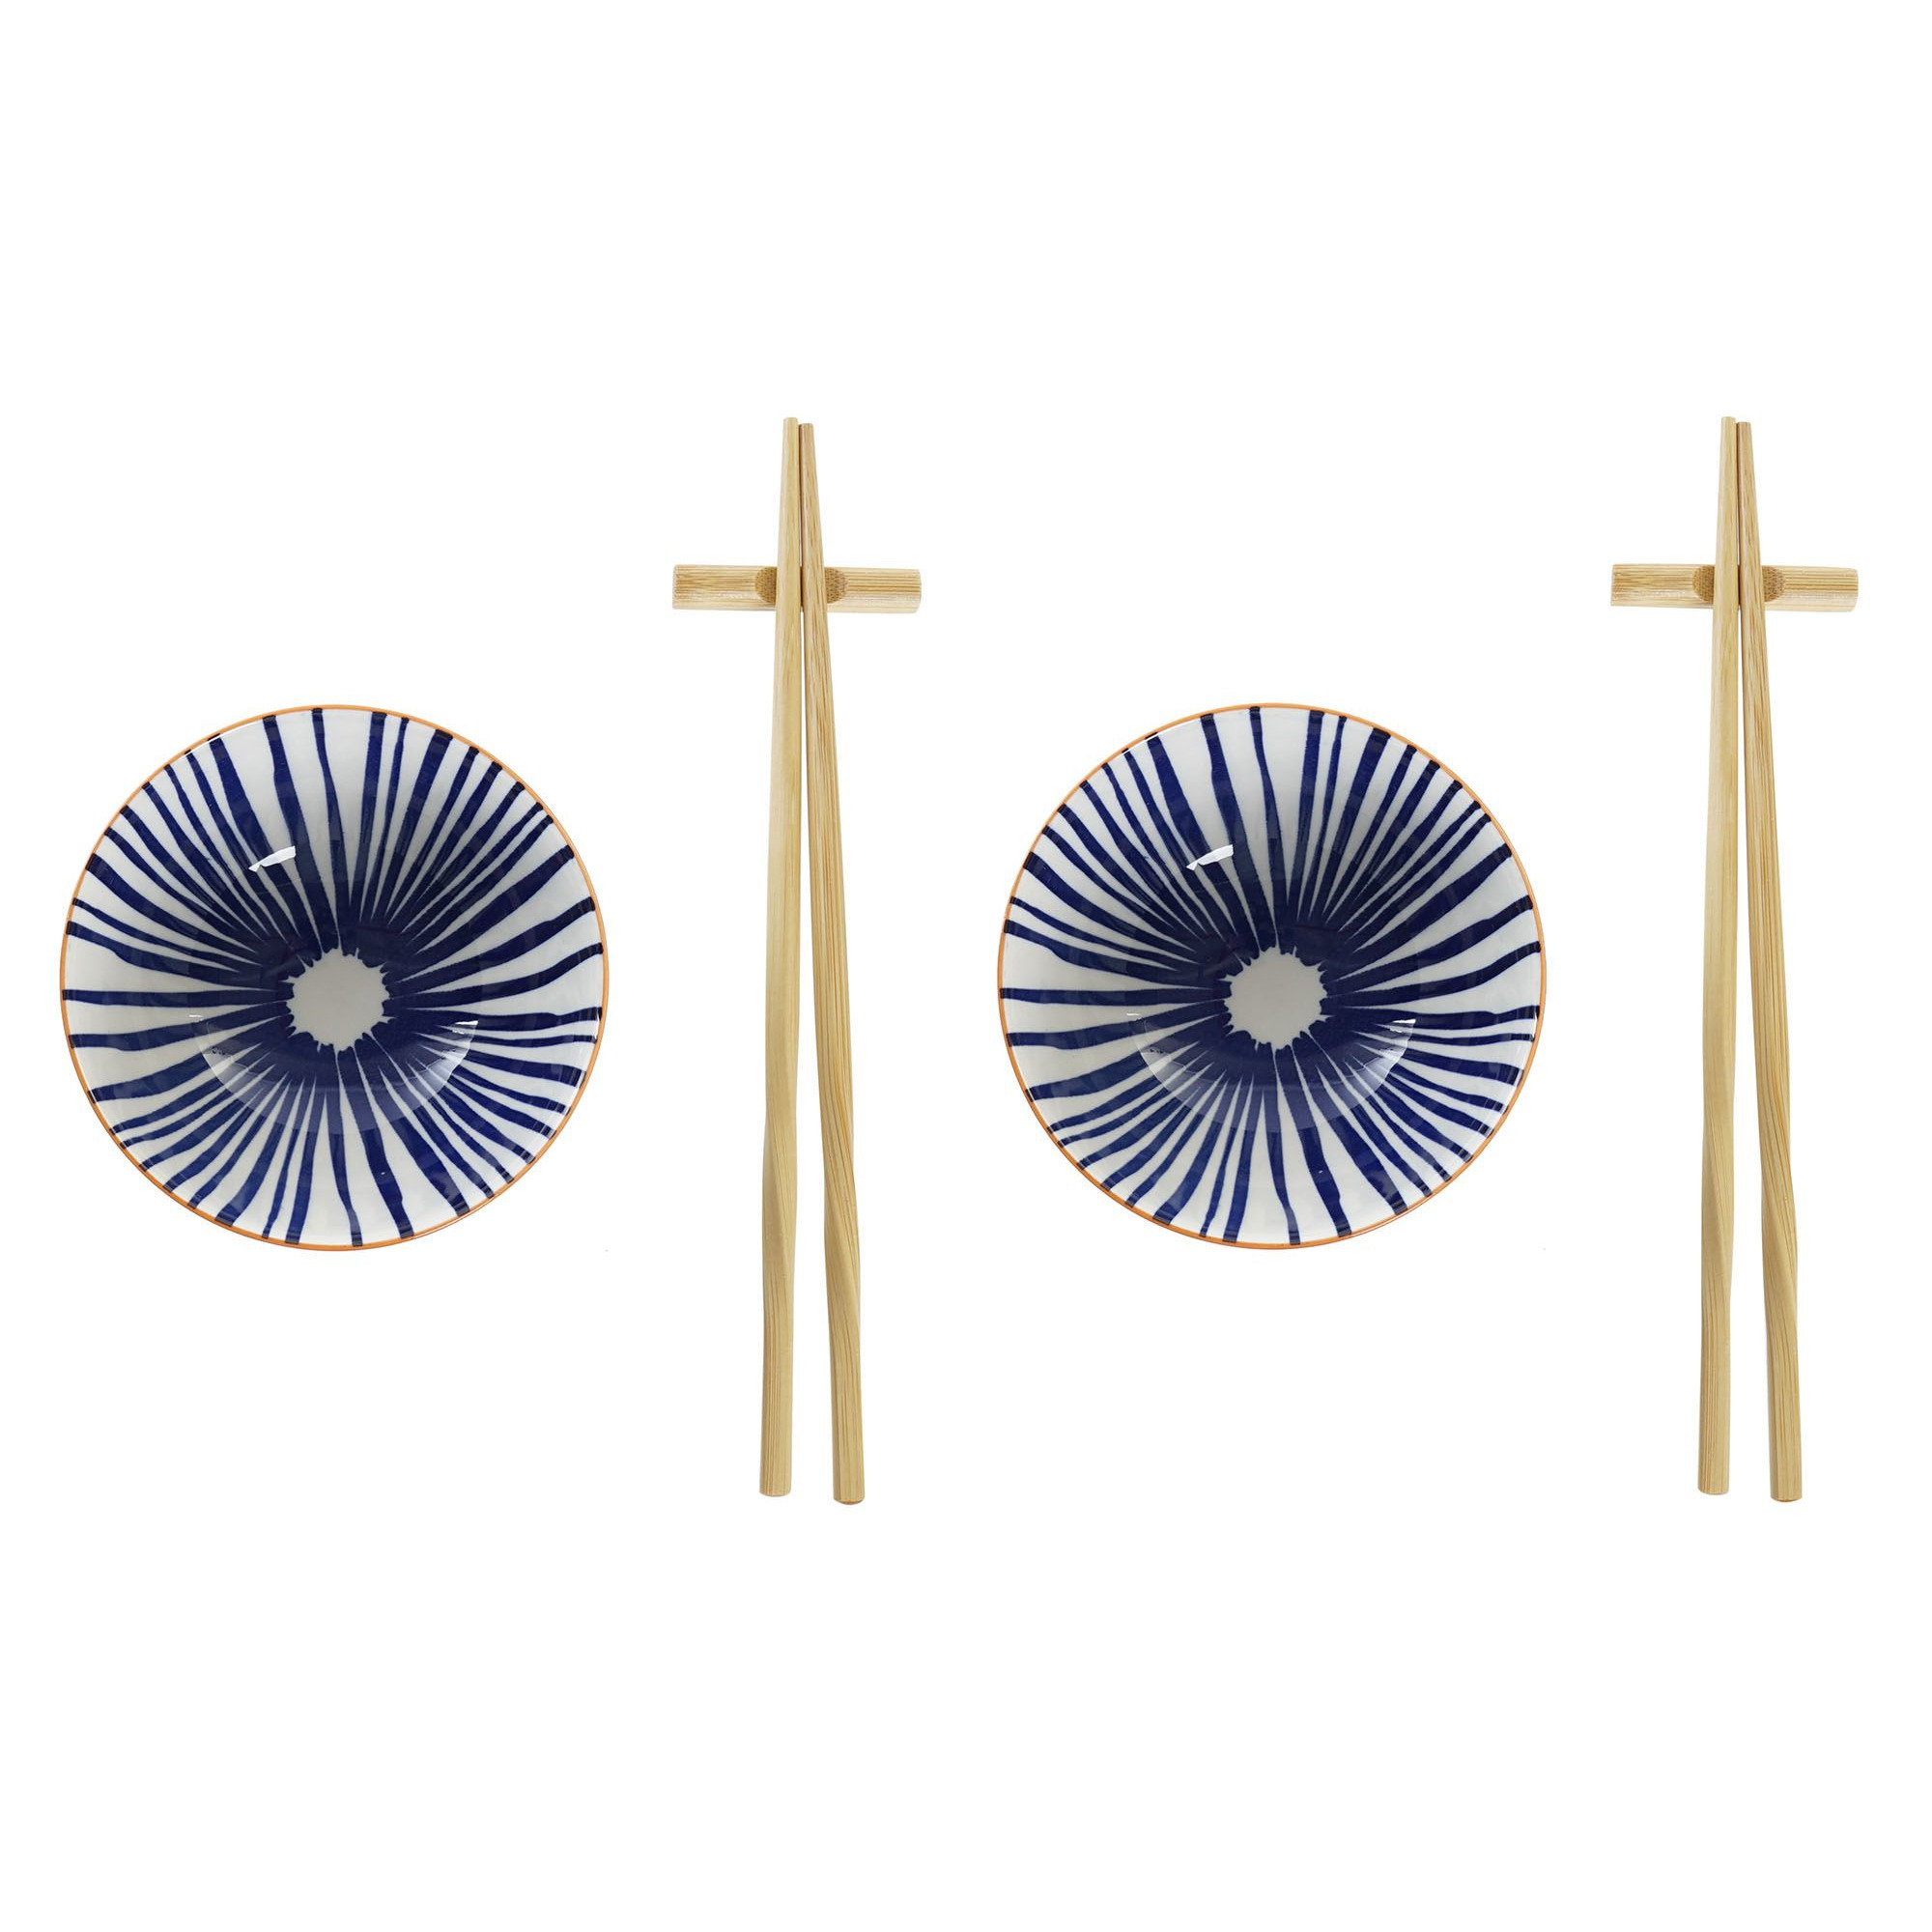 6-delige sushi serveer set aardewerk voor 2 personen blauw-wit